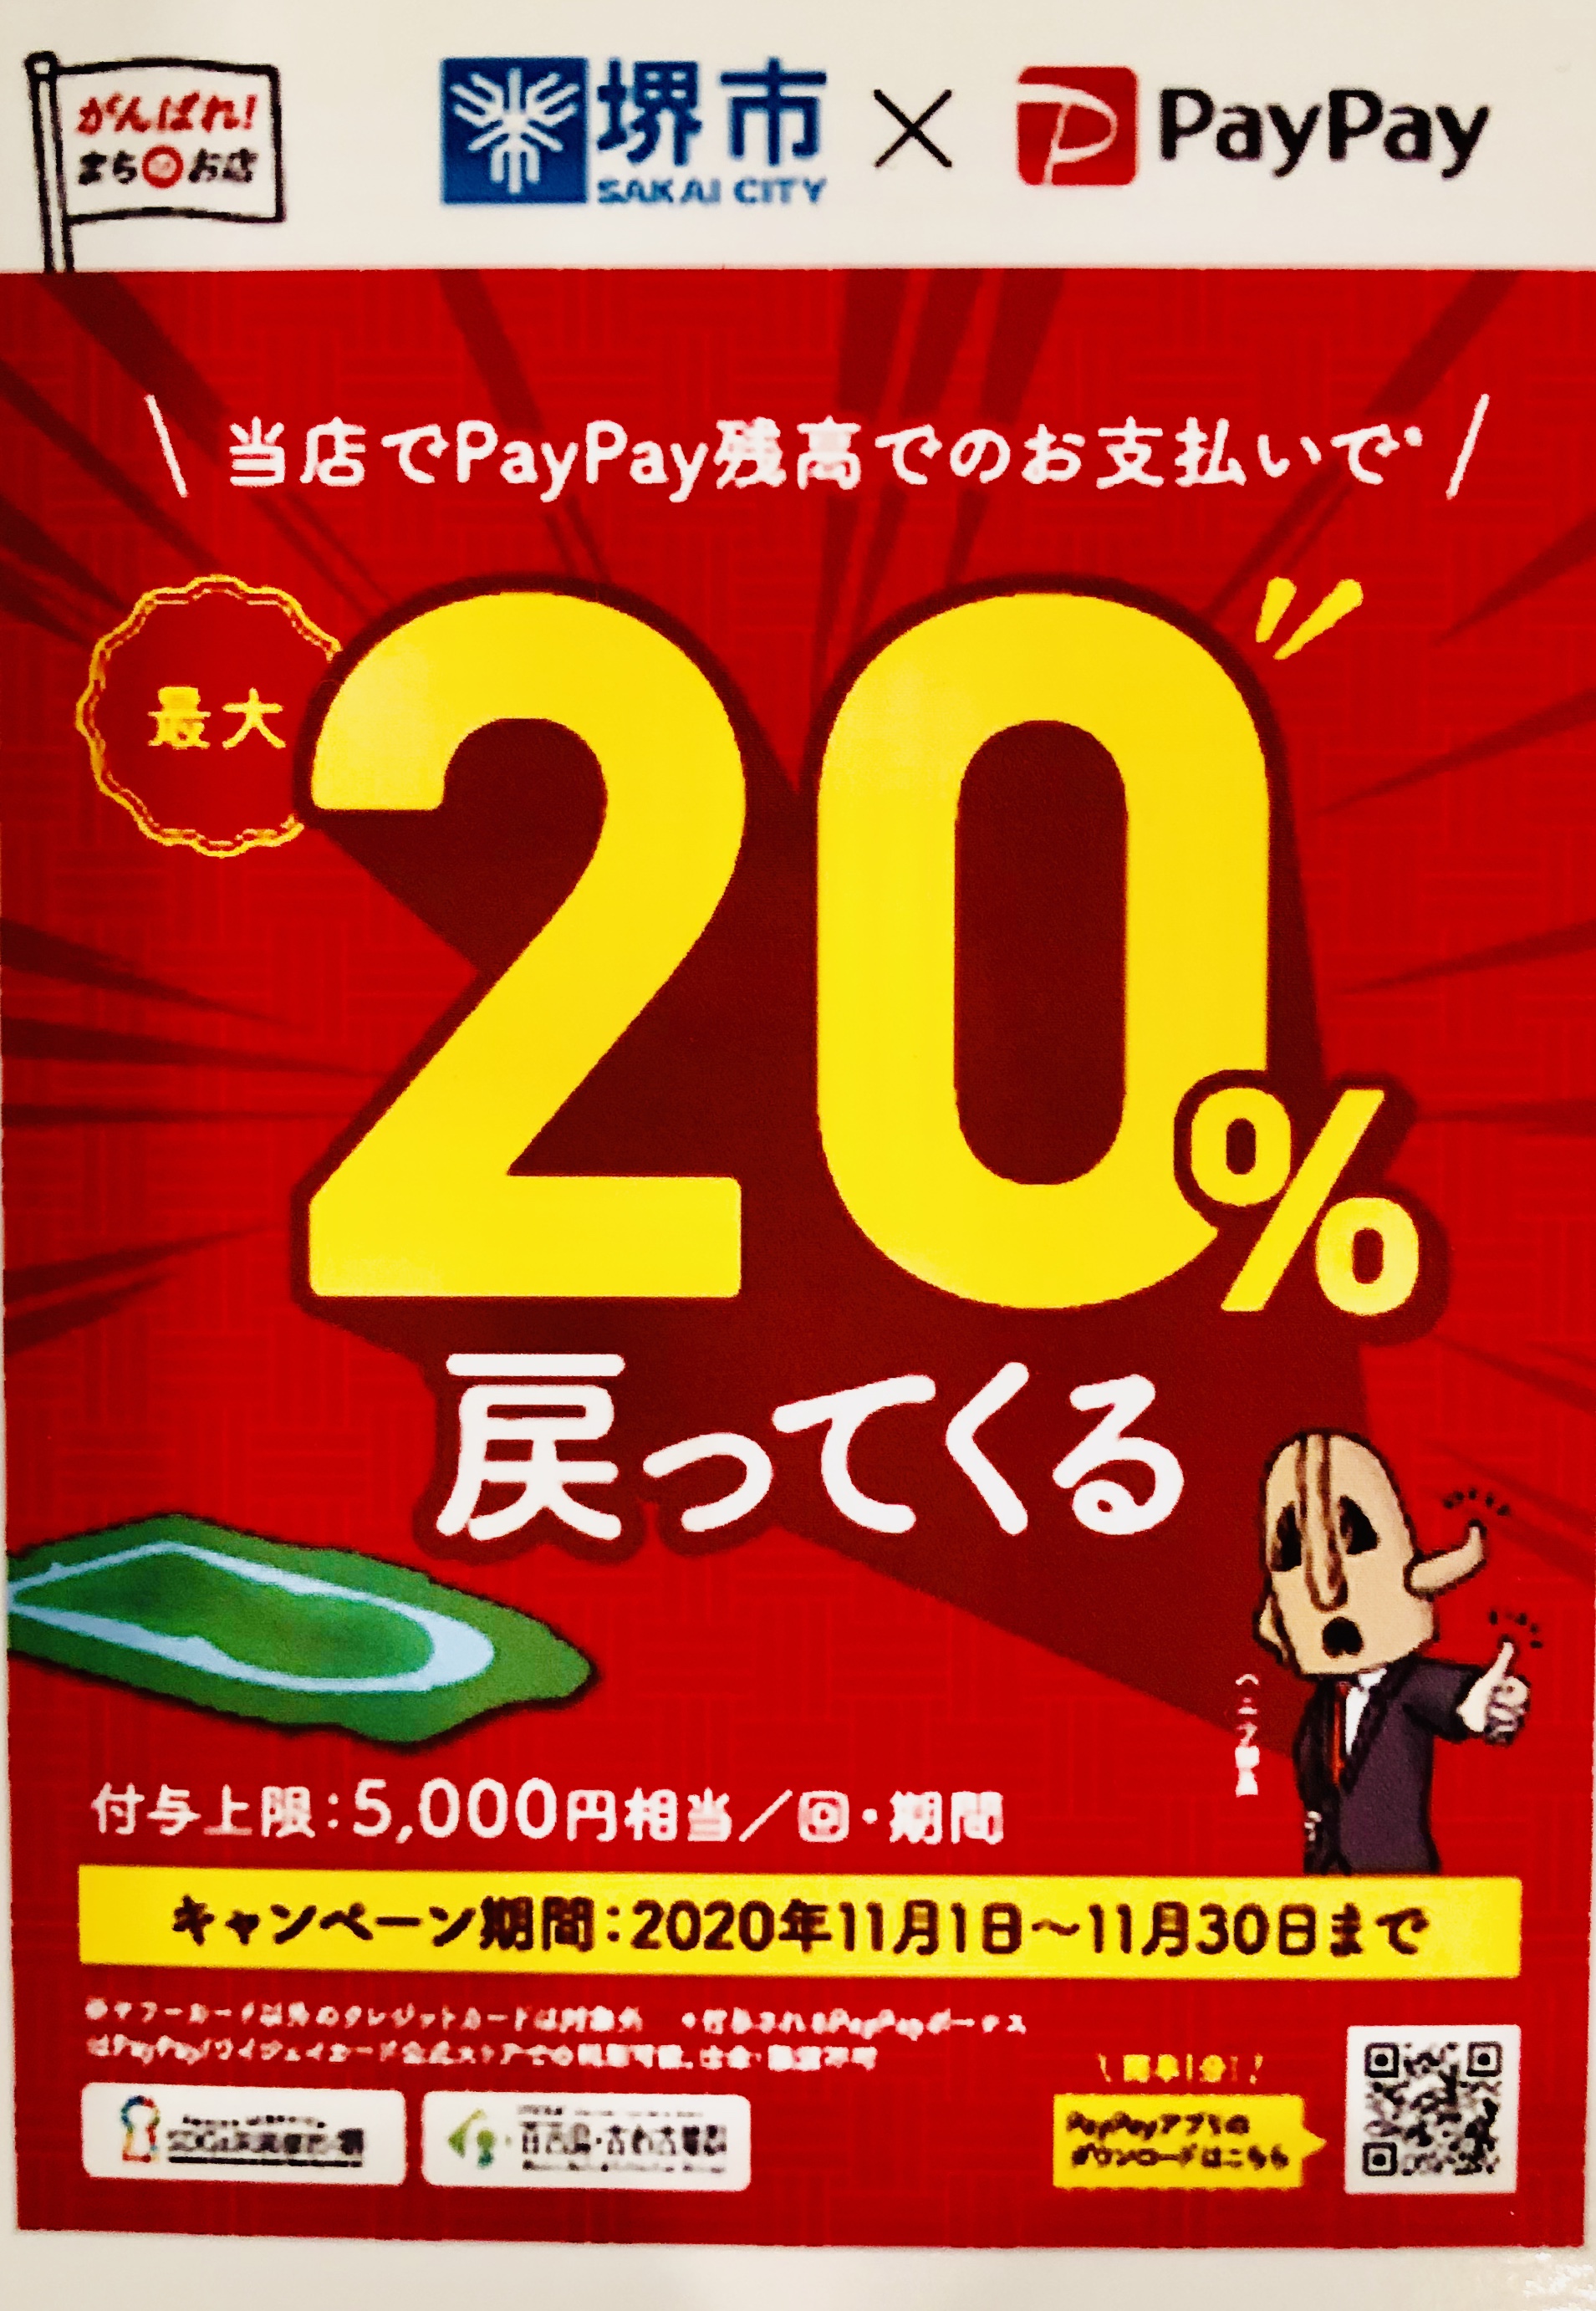 堺市paypayキャンペーン対象店舗です